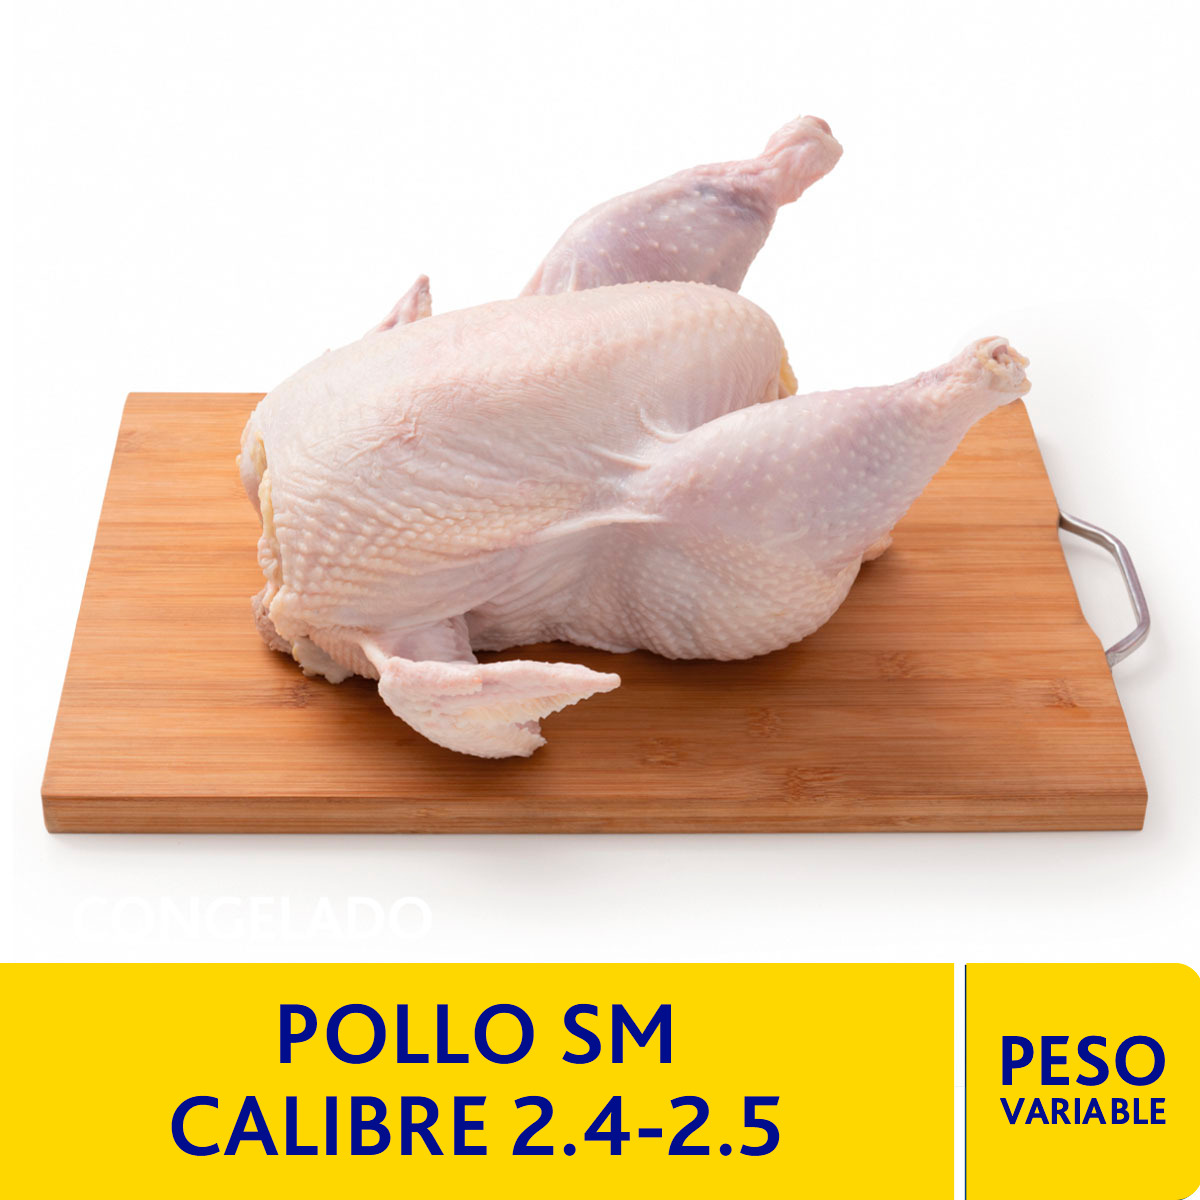 Pollo SM Calibre 2.4-2.5 kg.